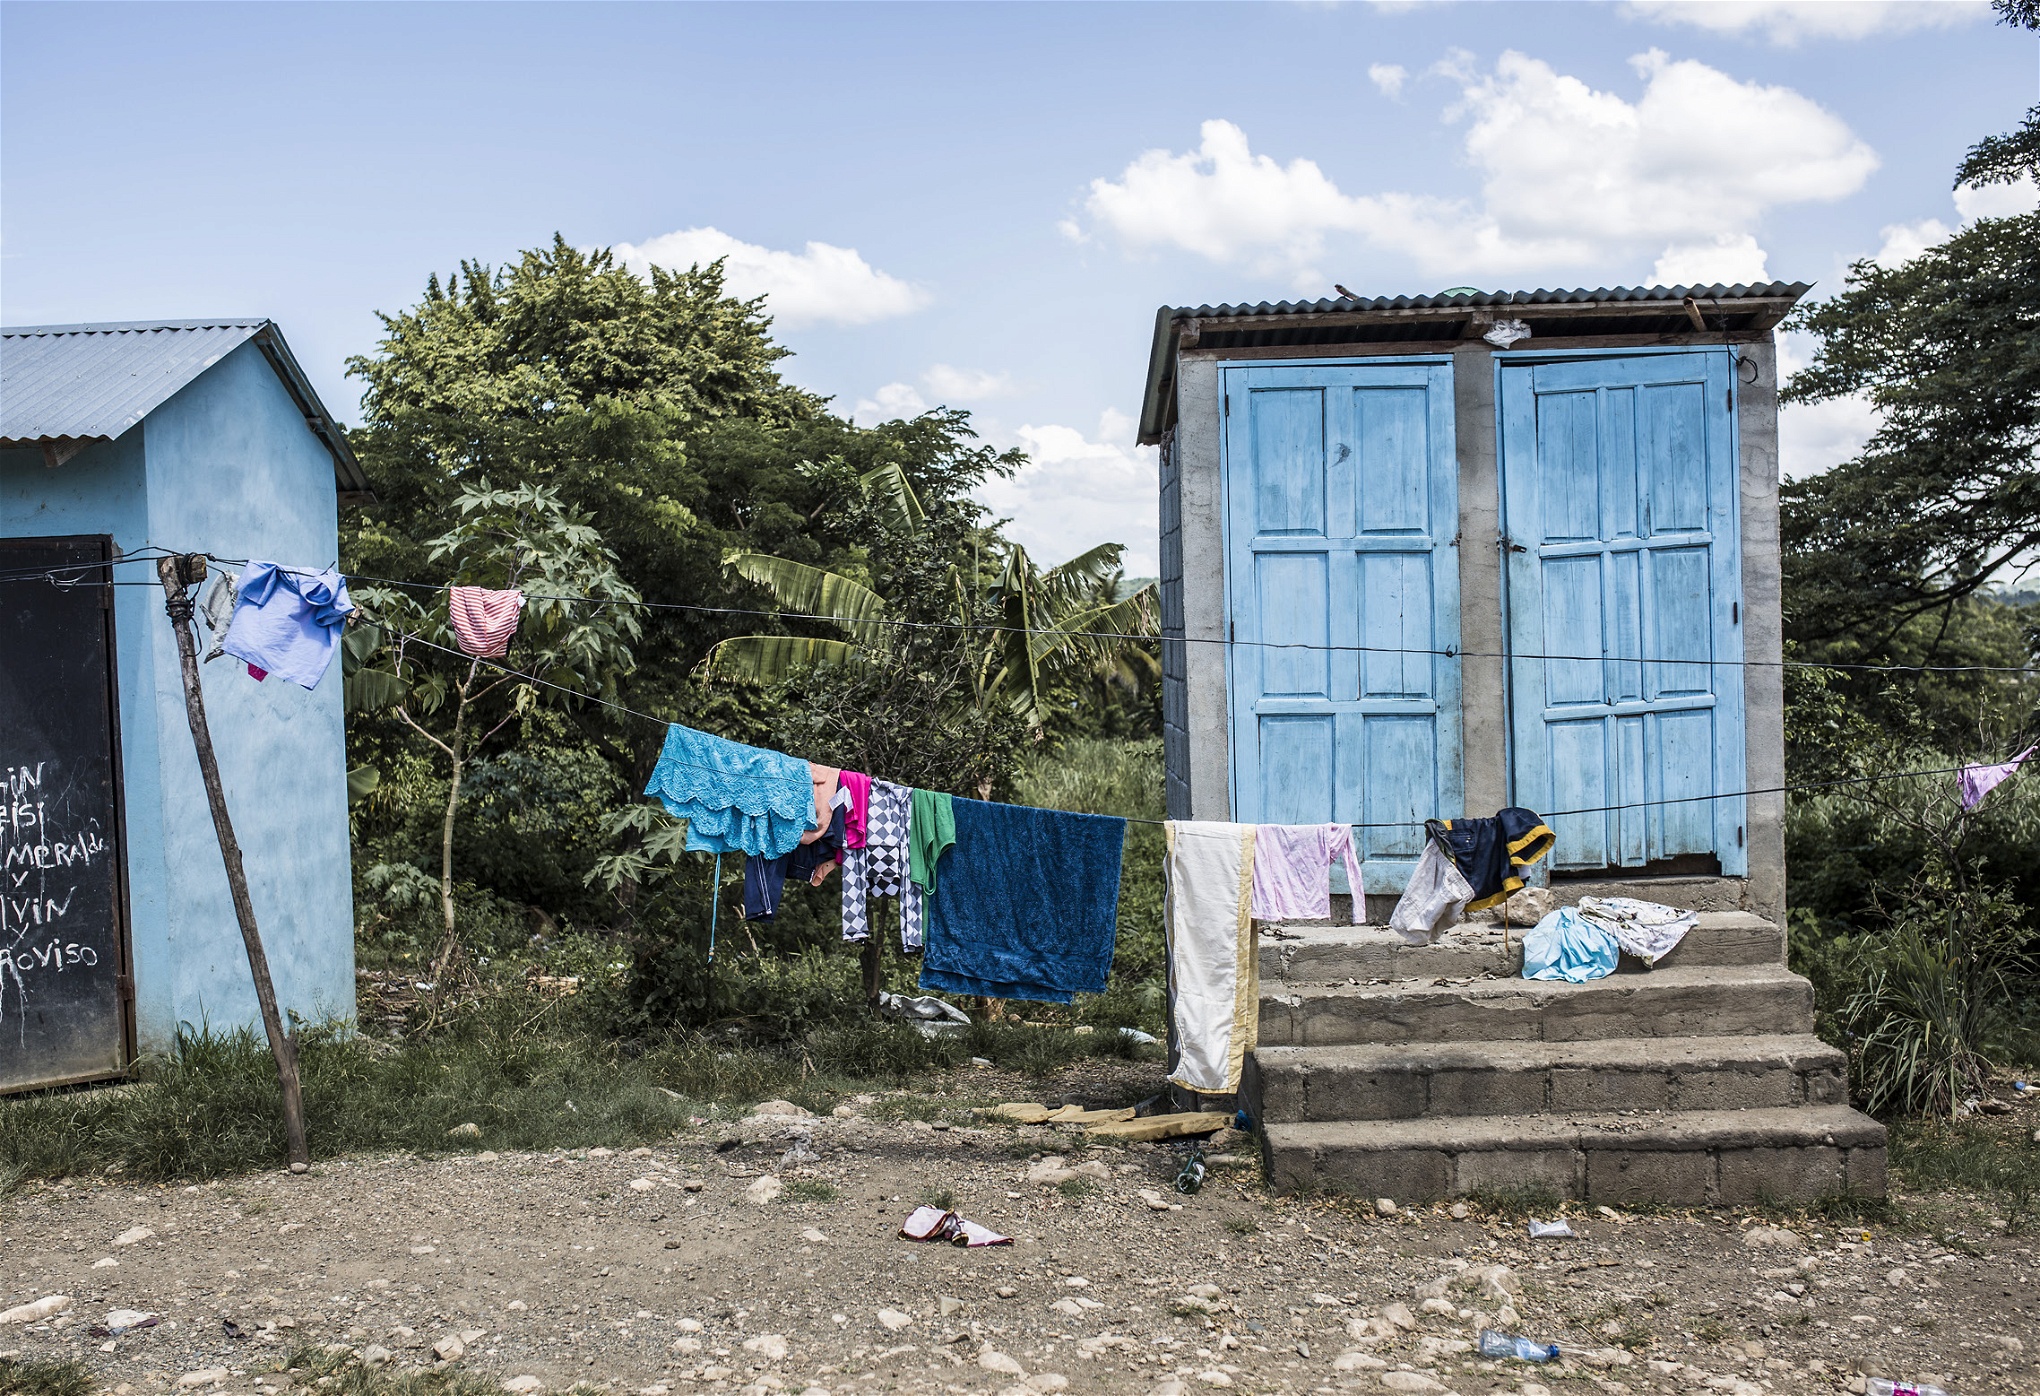 I bateyen La Jabin står toalettskjul utplacerade här och var. Trots den
eländiga situationen där är det ofta värre i andra bateyes, särskilt de
som är statligt ägda, berättar Ulrick Gaillard på Batey Relief Alliance.